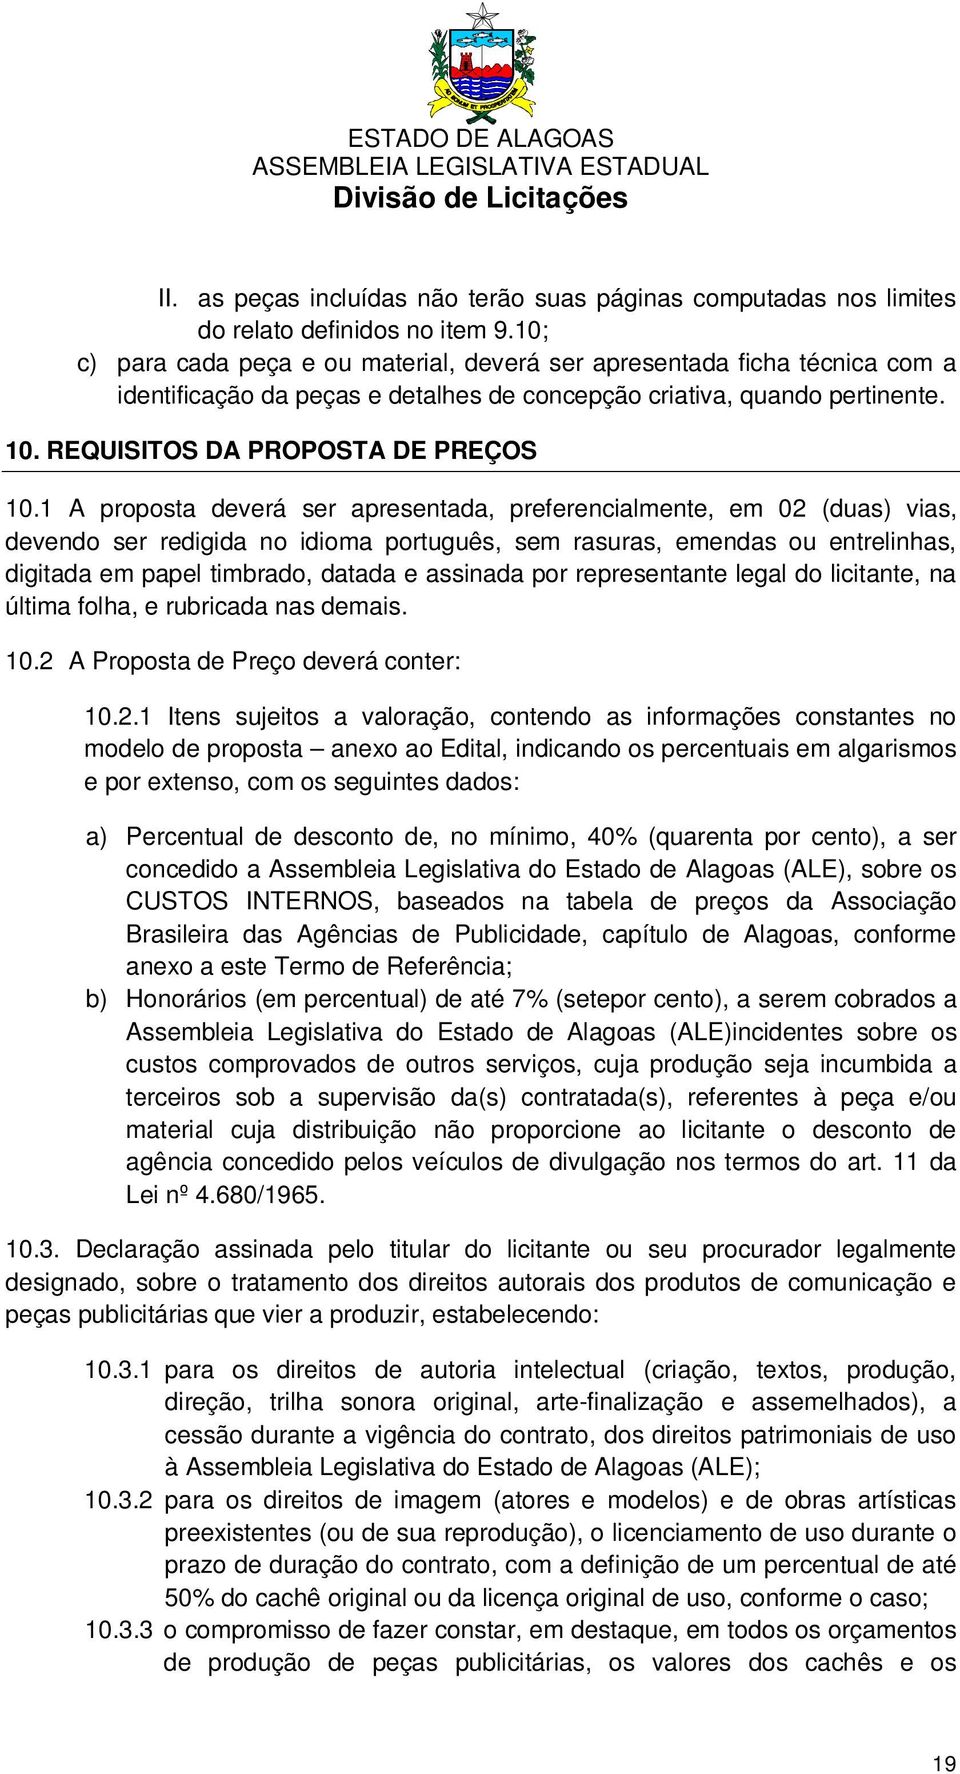 1 A proposta deverá ser apresentada, preferencialmente, em 02 (duas) vias, devendo ser redigida no idioma português, sem rasuras, emendas ou entrelinhas, digitada em papel timbrado, datada e assinada